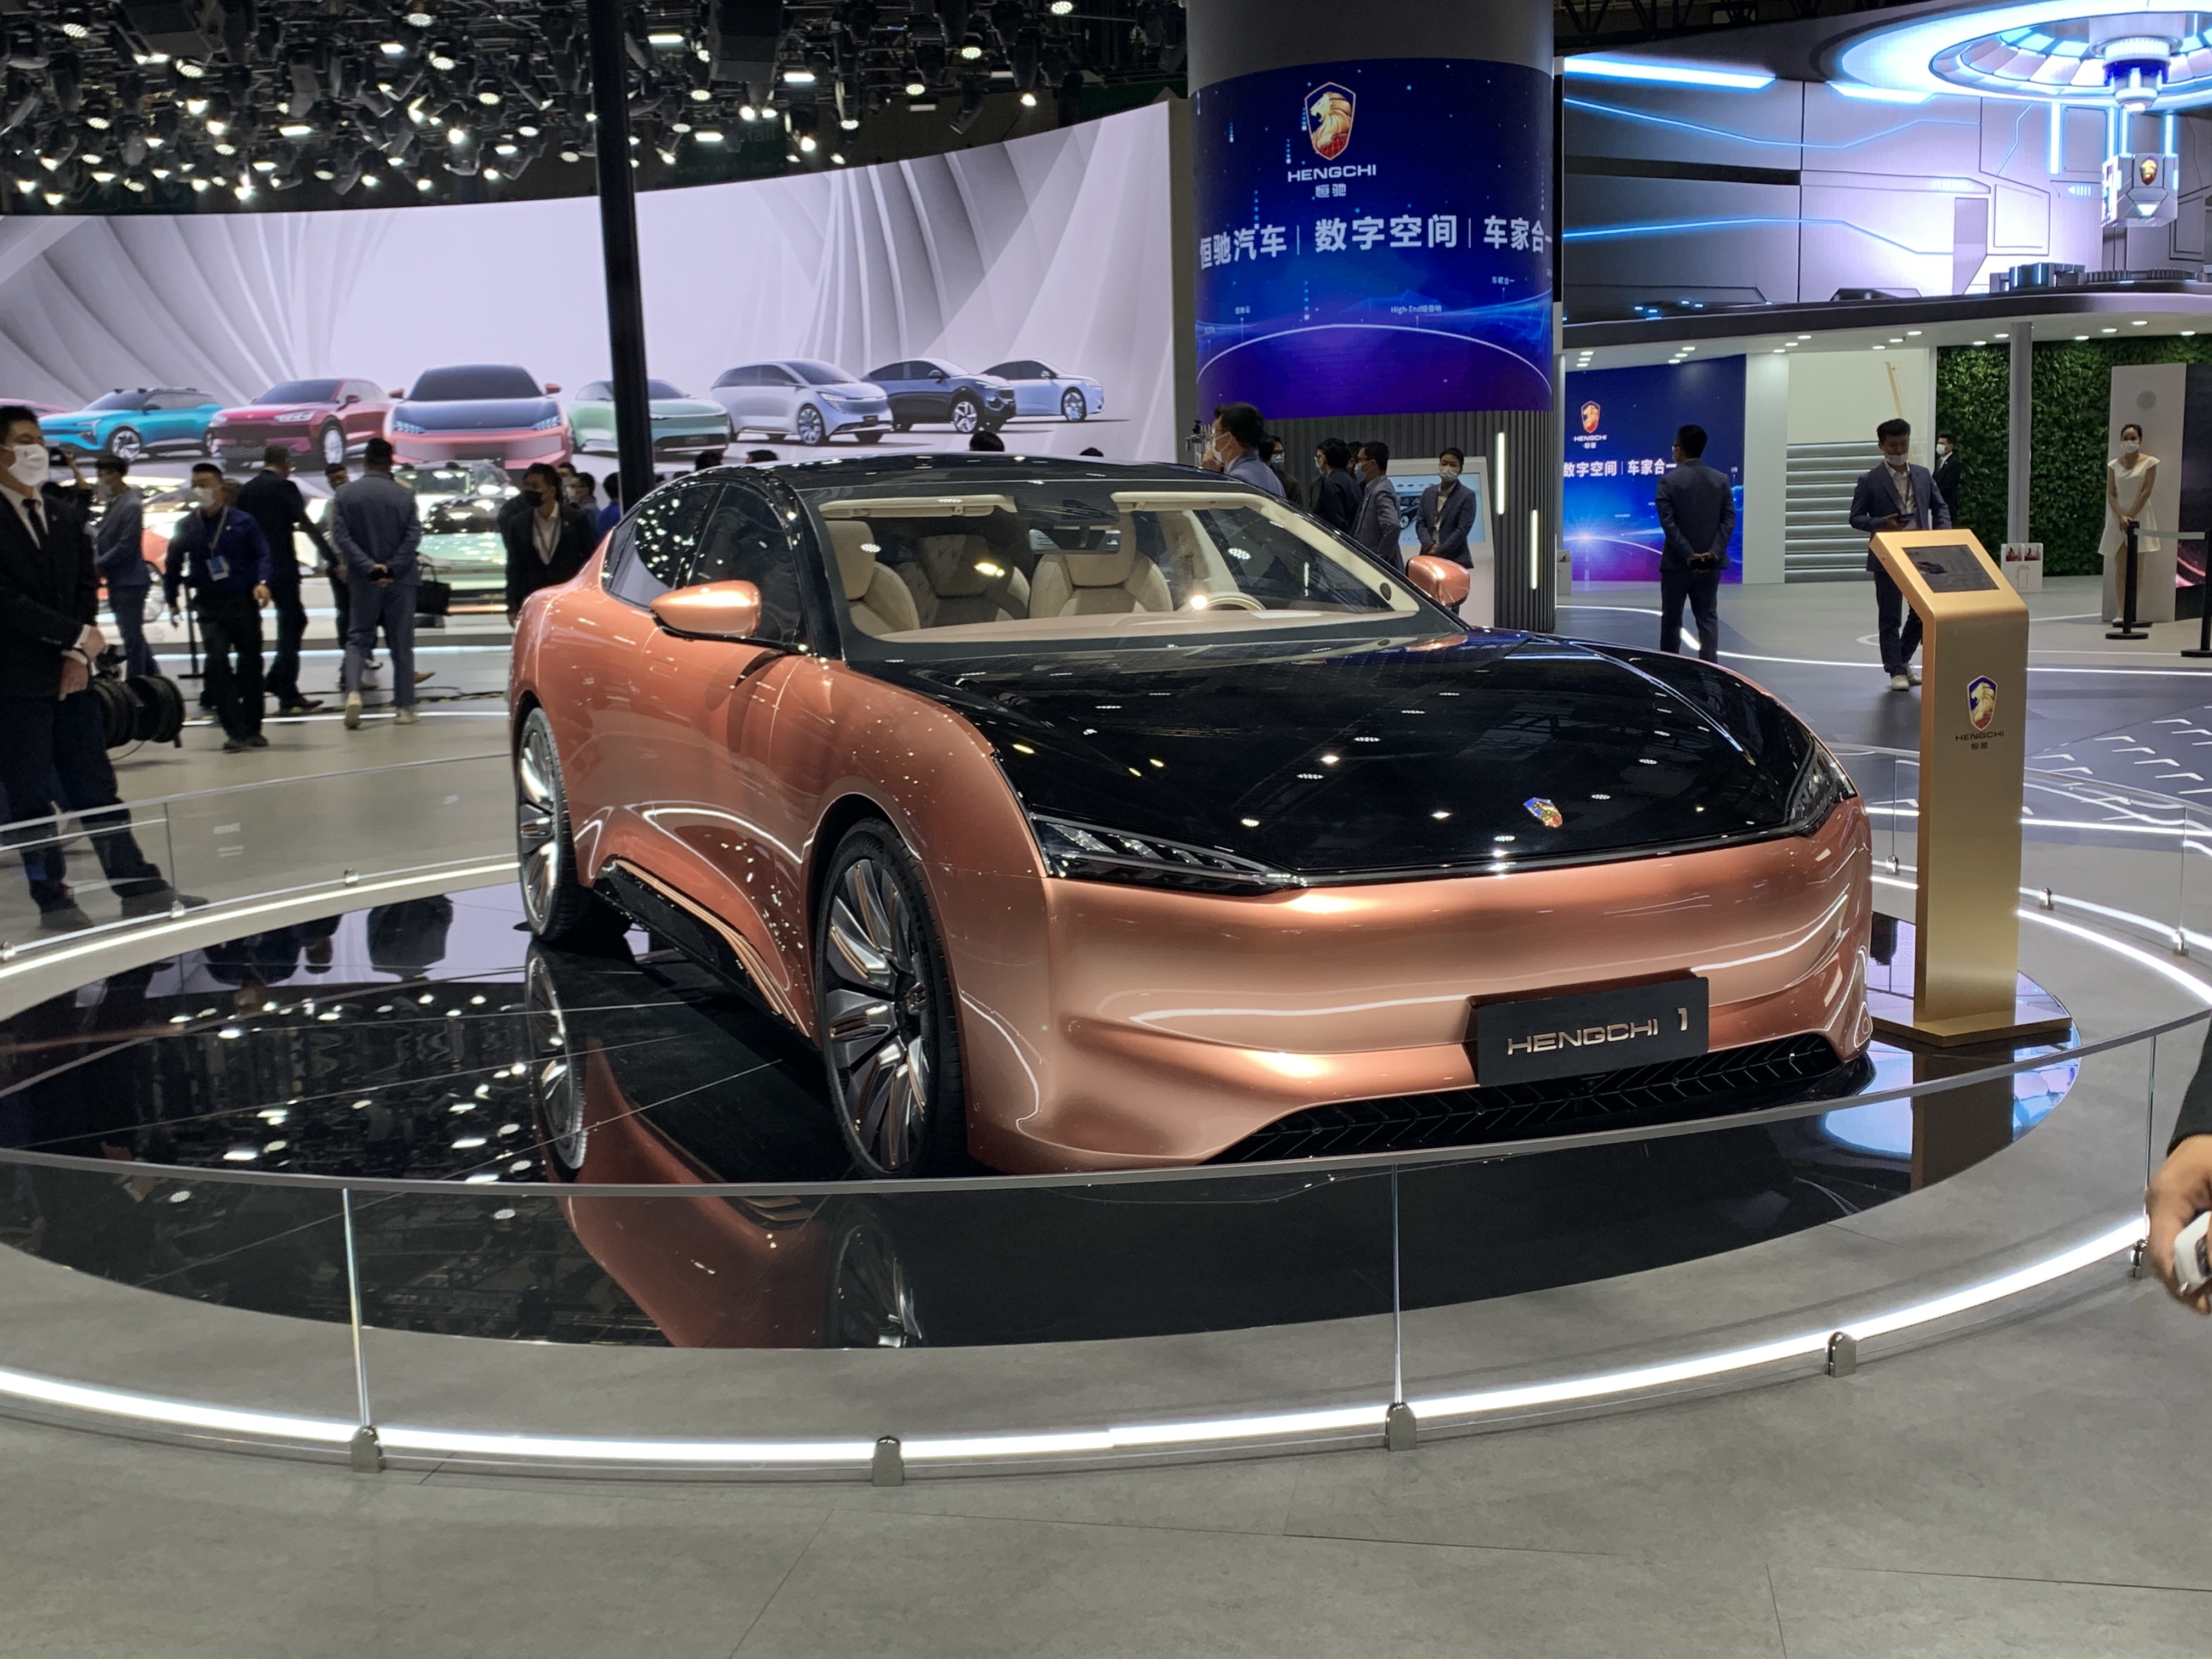 2021上海车展恒驰1最新版本正式亮相恒大汽车的首款大型轿车